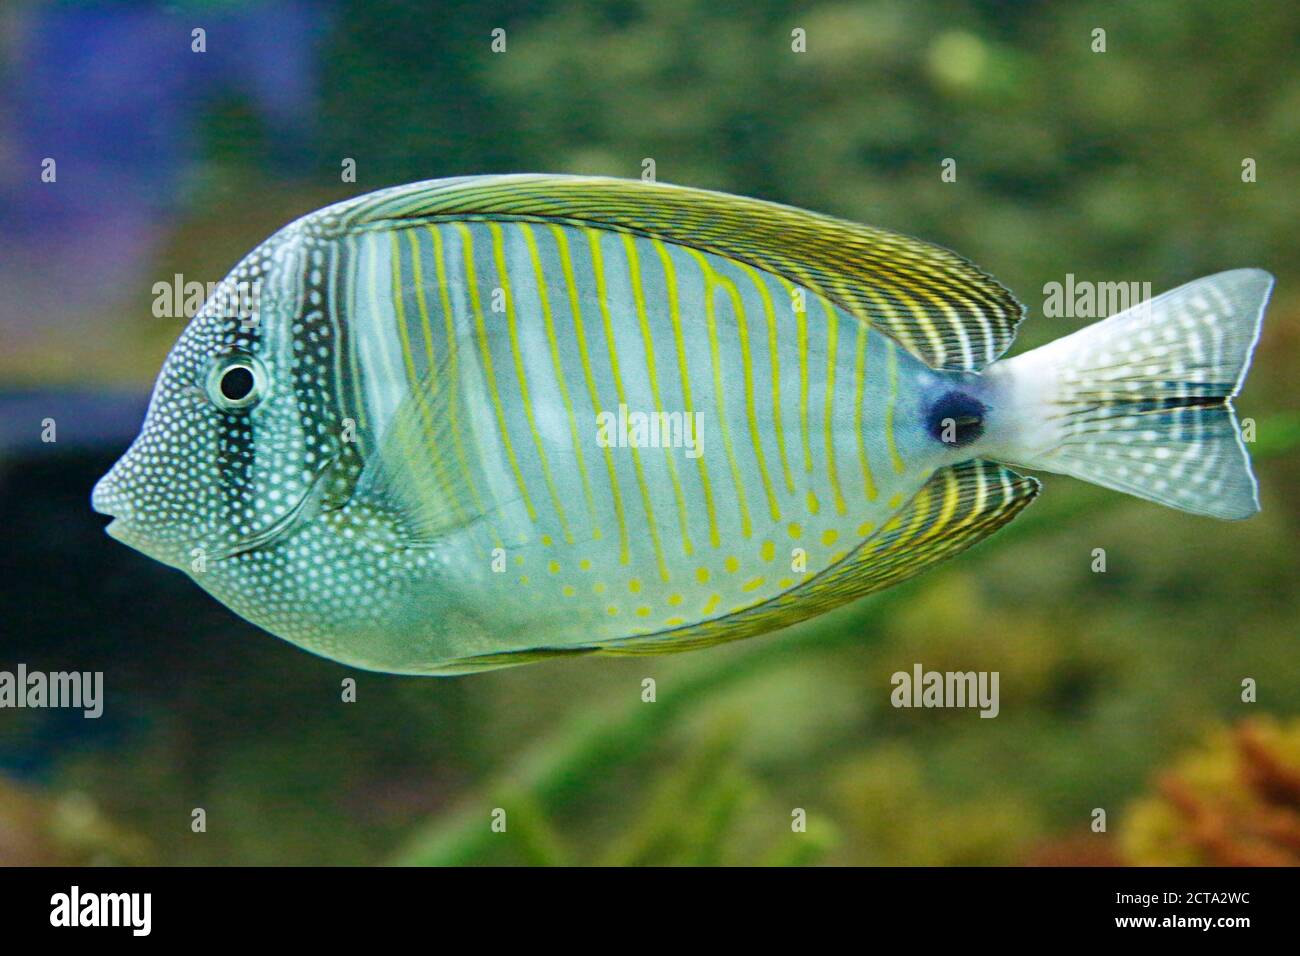 Red Sea sailfin tang (Zebrasoma desjardinii), also known as the Desjardins sailfin tang Stock Photo